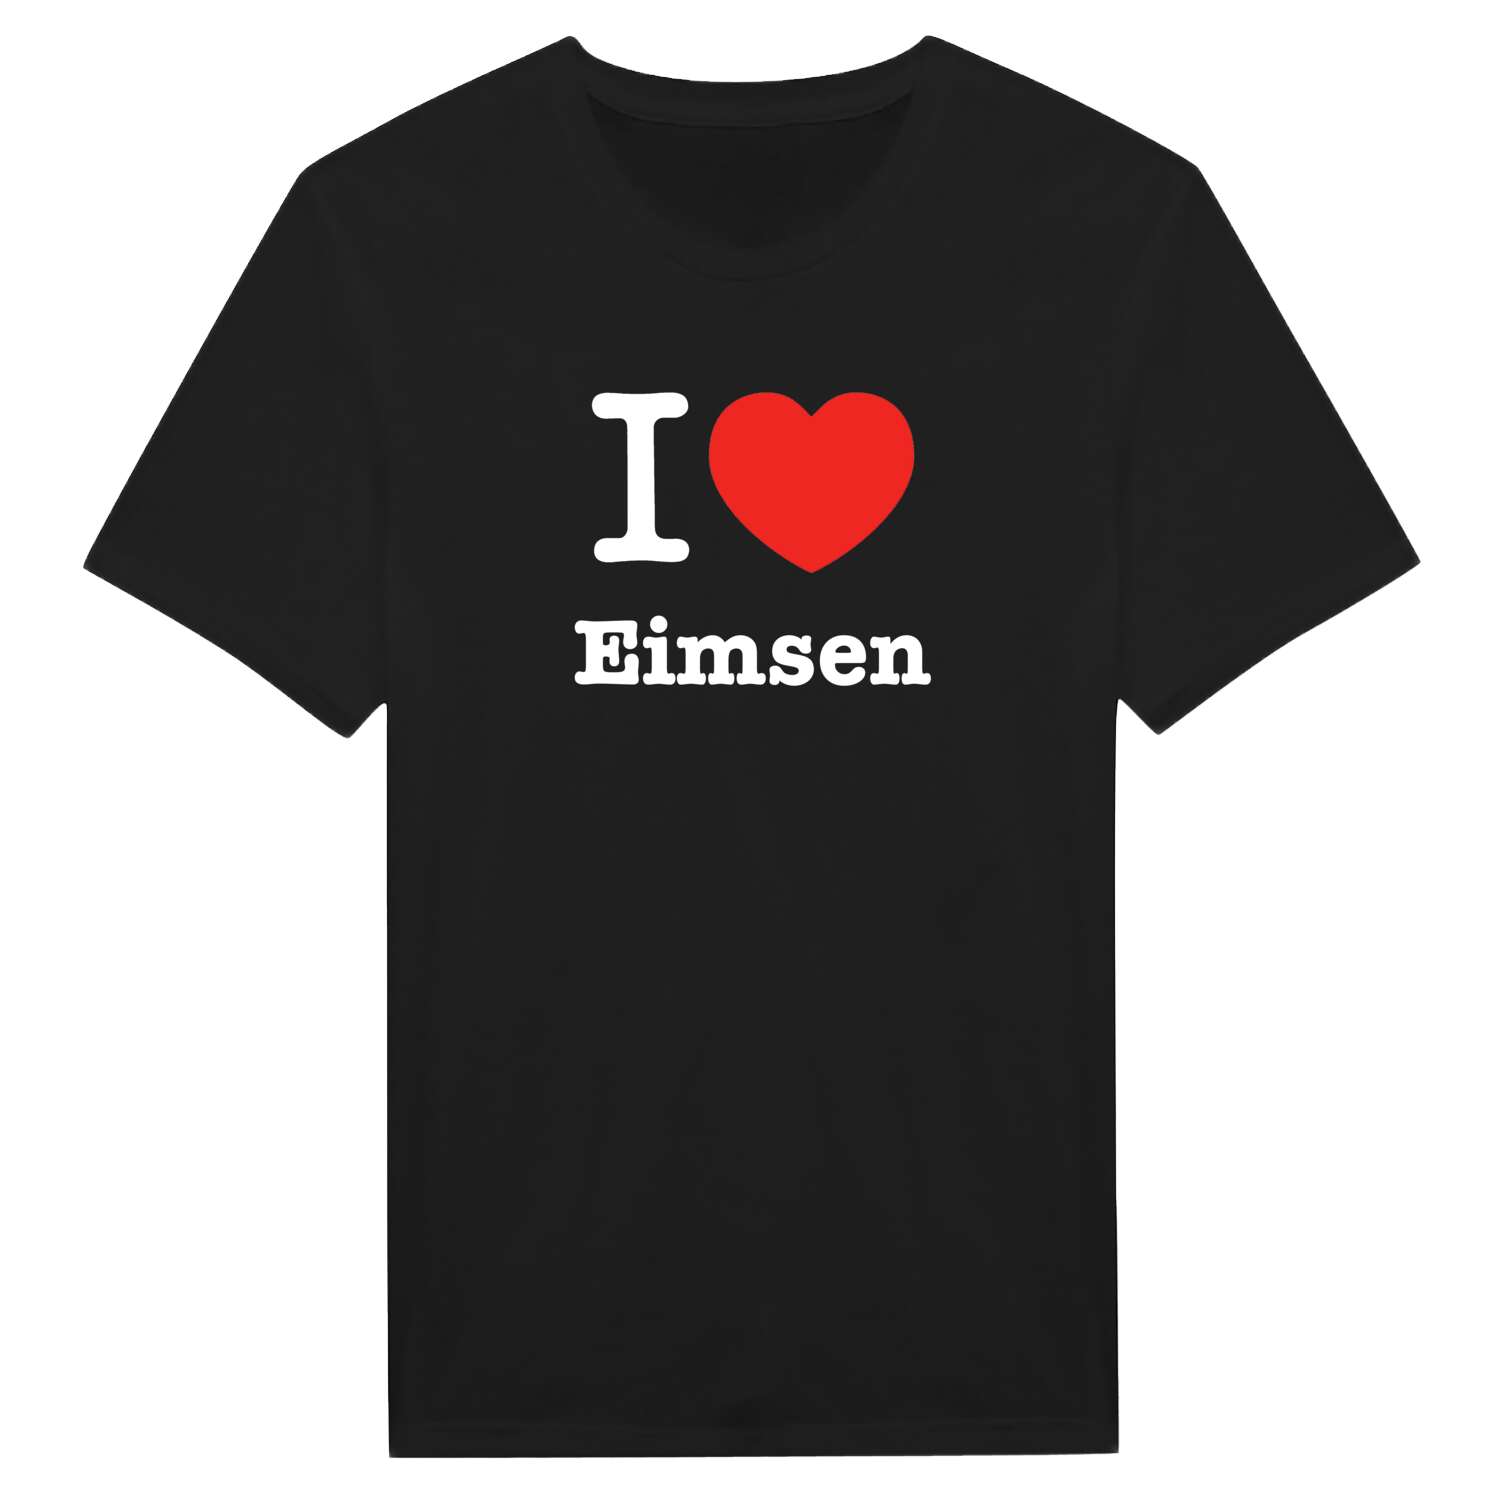 Eimsen T-Shirt »I love«